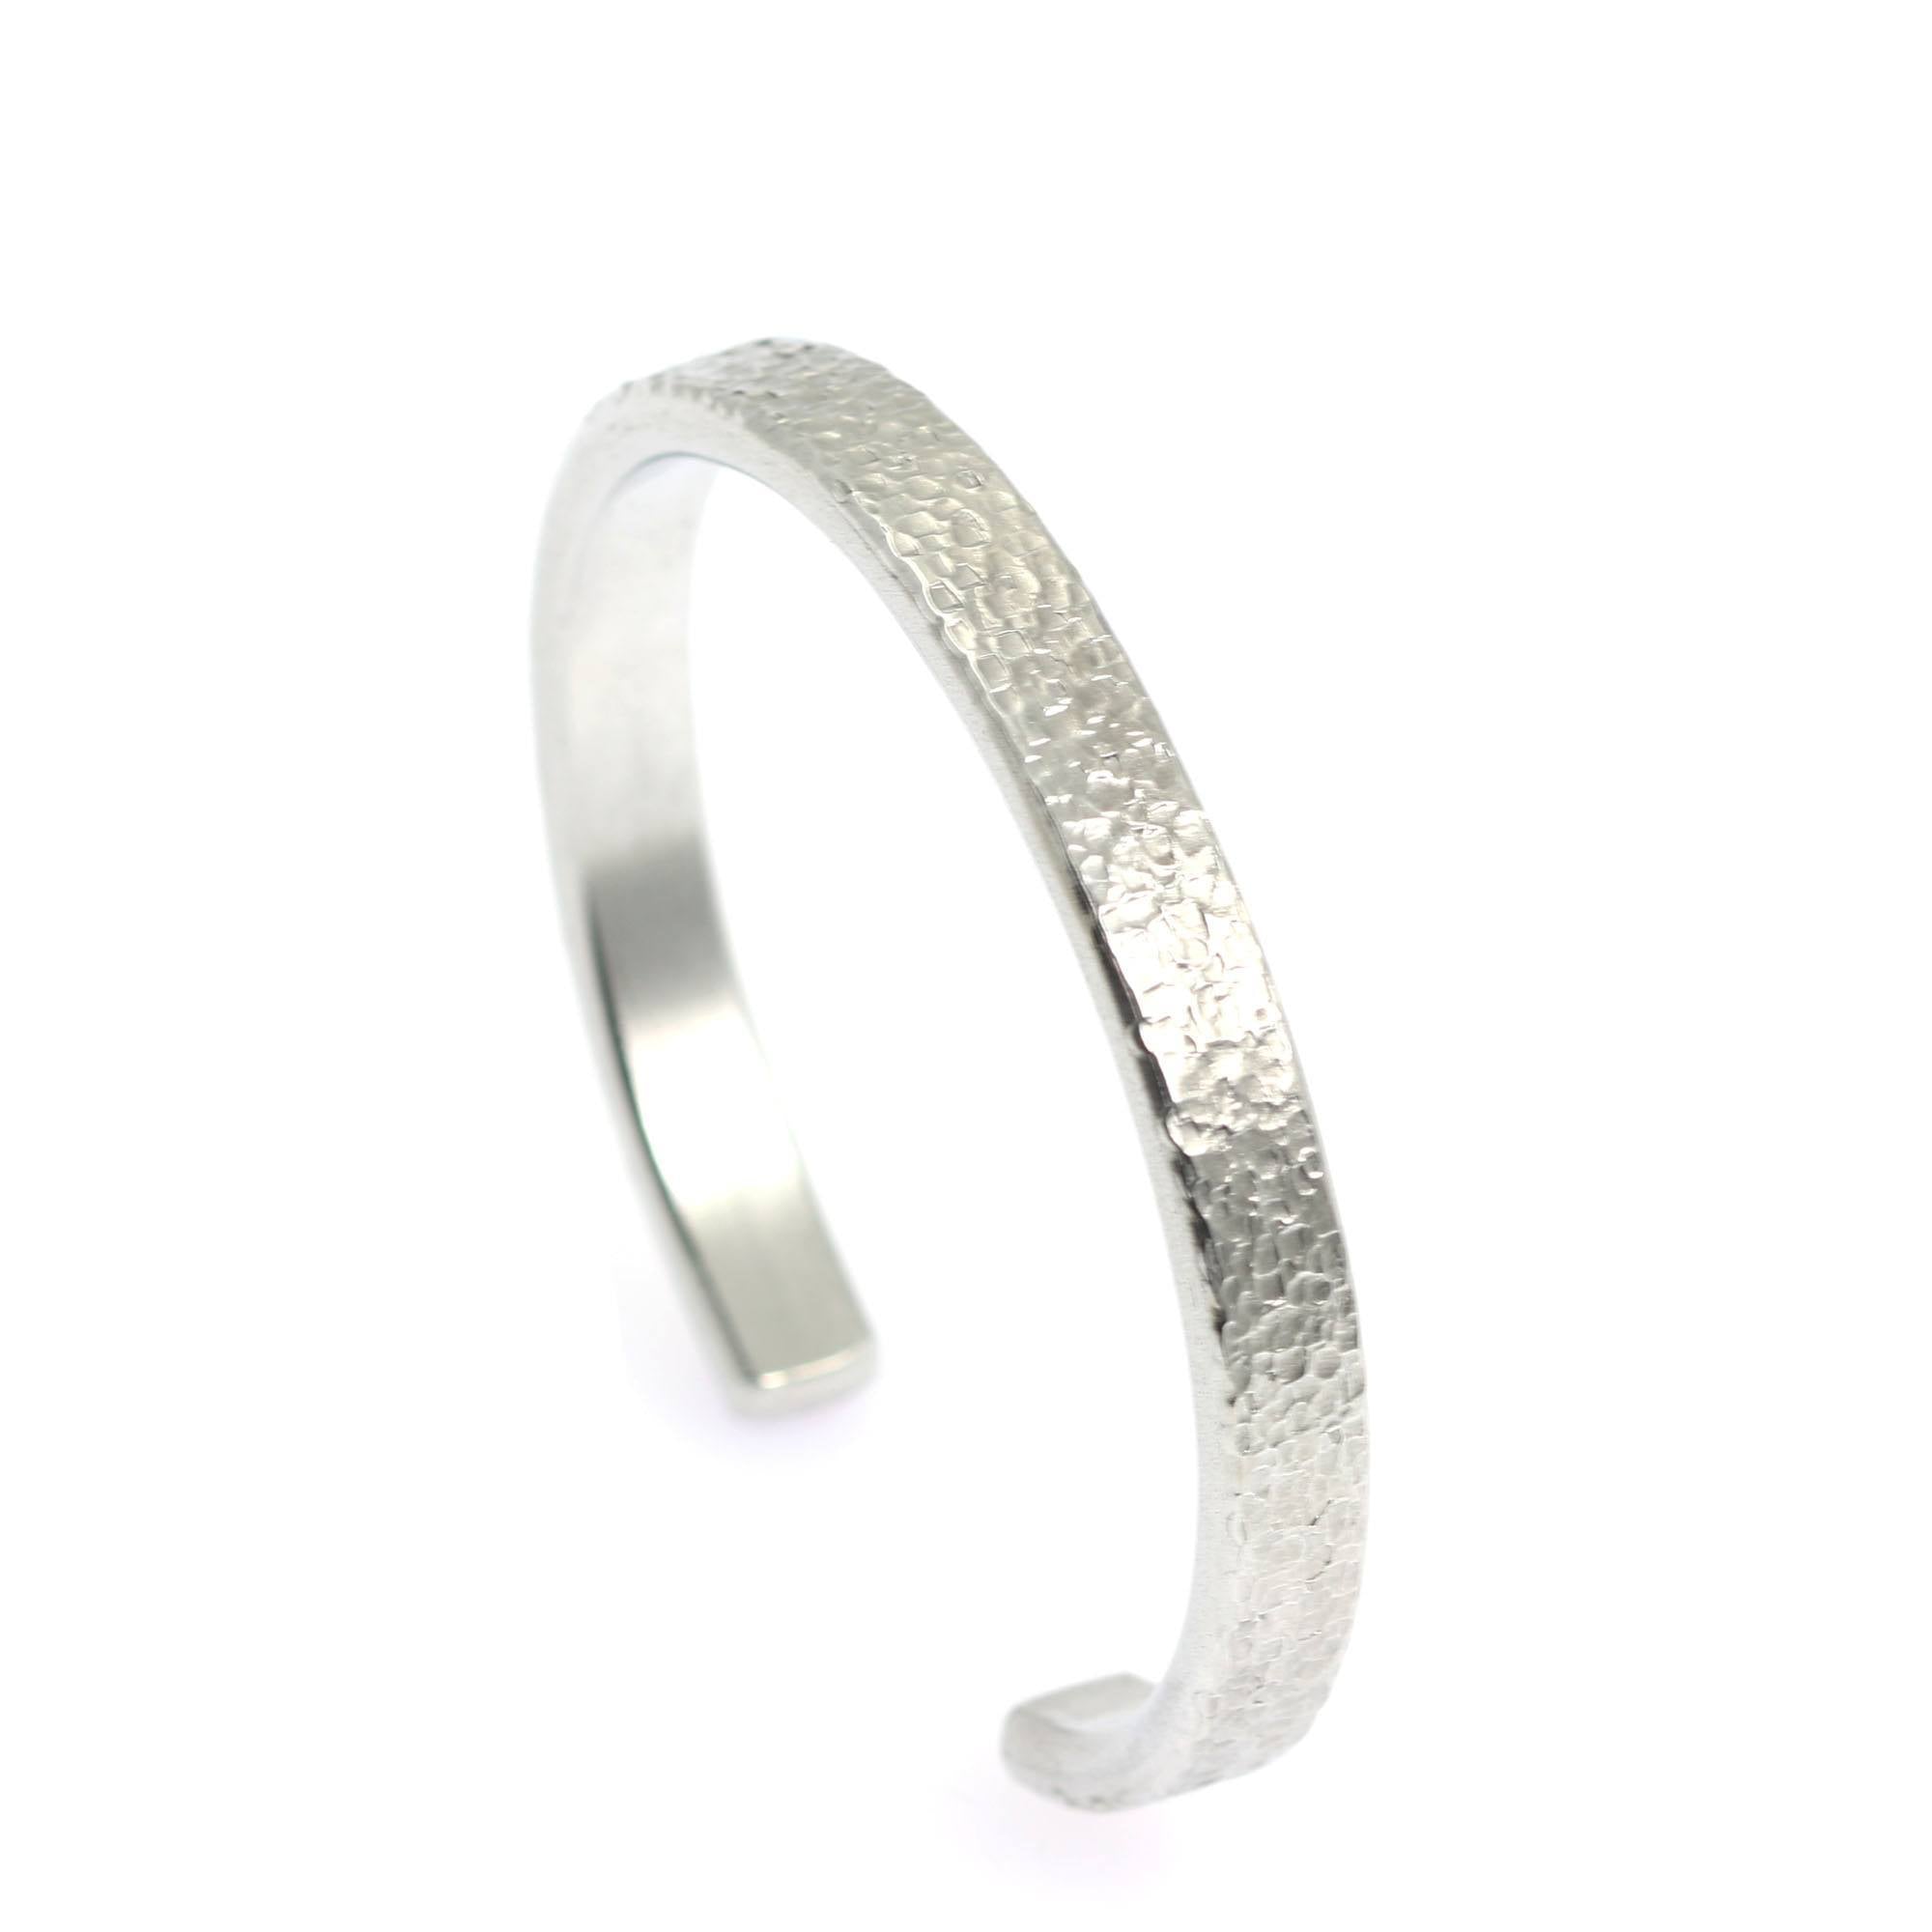 BUY Buy Thin Texturized Aluminum Cuff Bracelet | John S. Brana